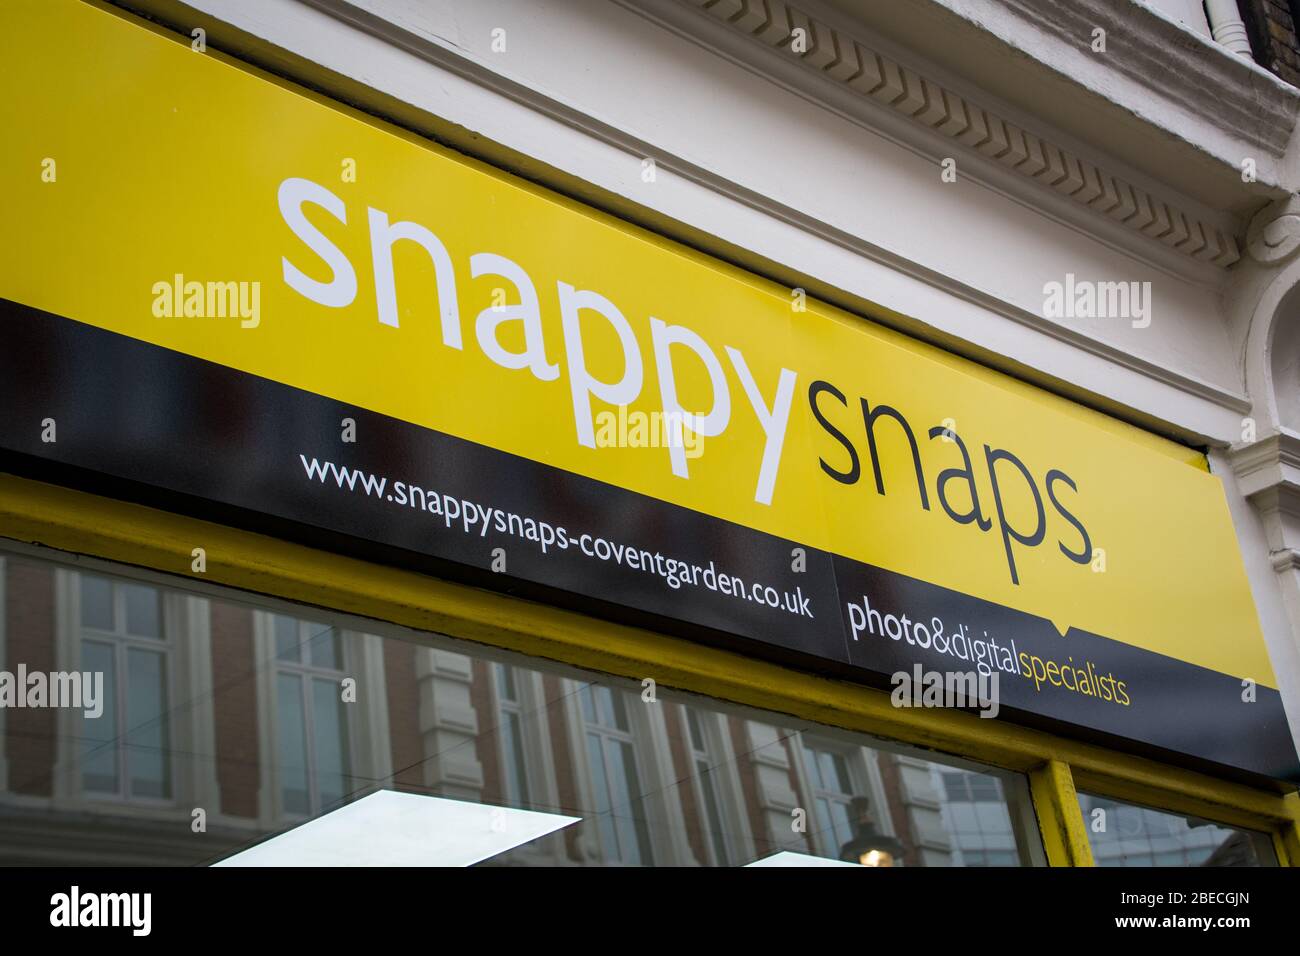 LONDRA - MARZO 2019: Exterior of Snappy Snaps store, una serie britannica di servizi fotografici con molti negozi di alta strada in tutto il Regno Unito Foto Stock